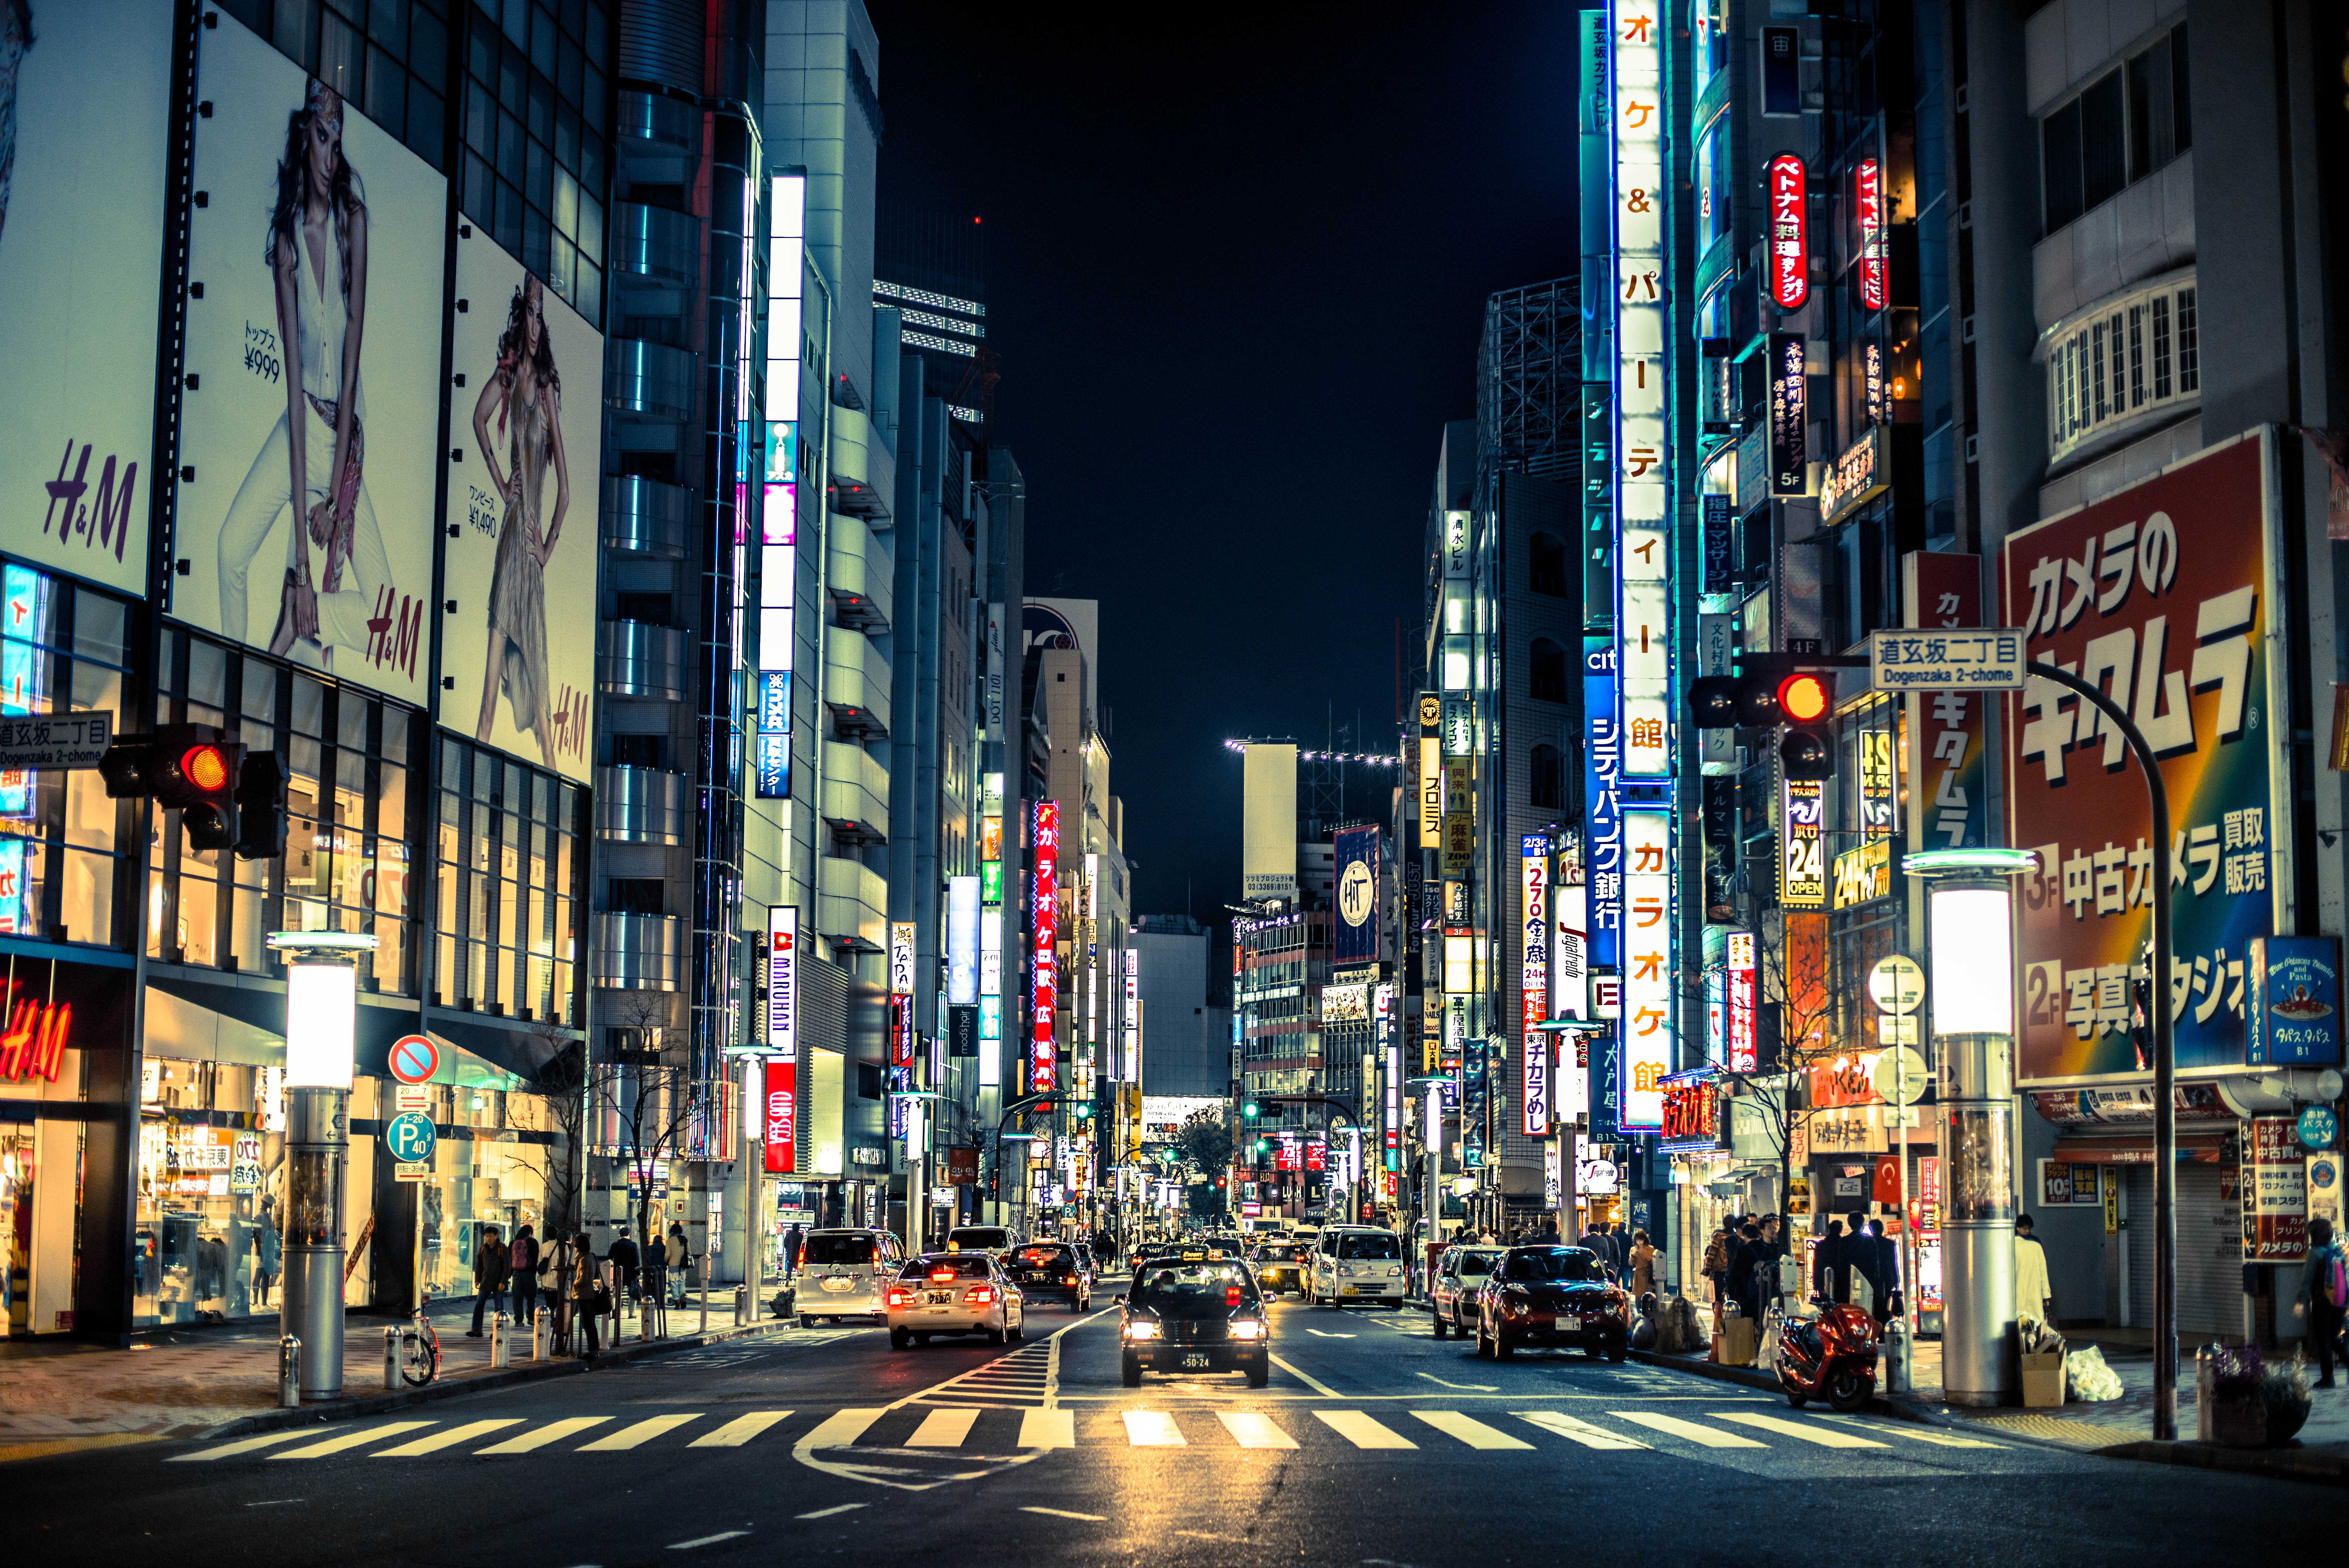 Японских Городов фото в формате jpeg, большой выбор 1920×1080 фото